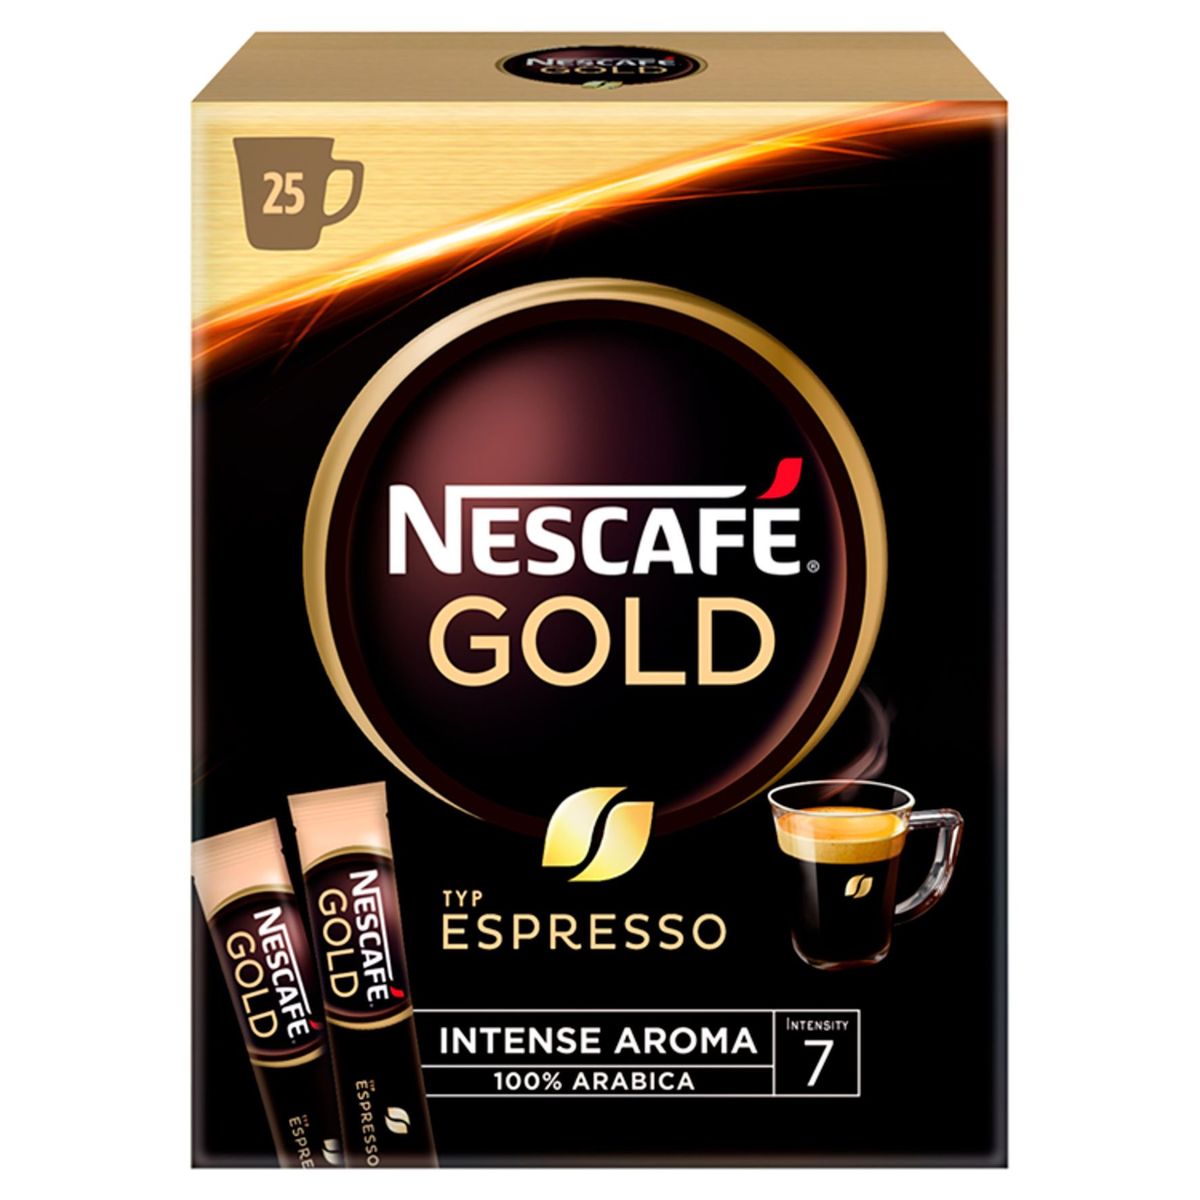 Nescafé Gold Espresso Original 25 x 1.8 g